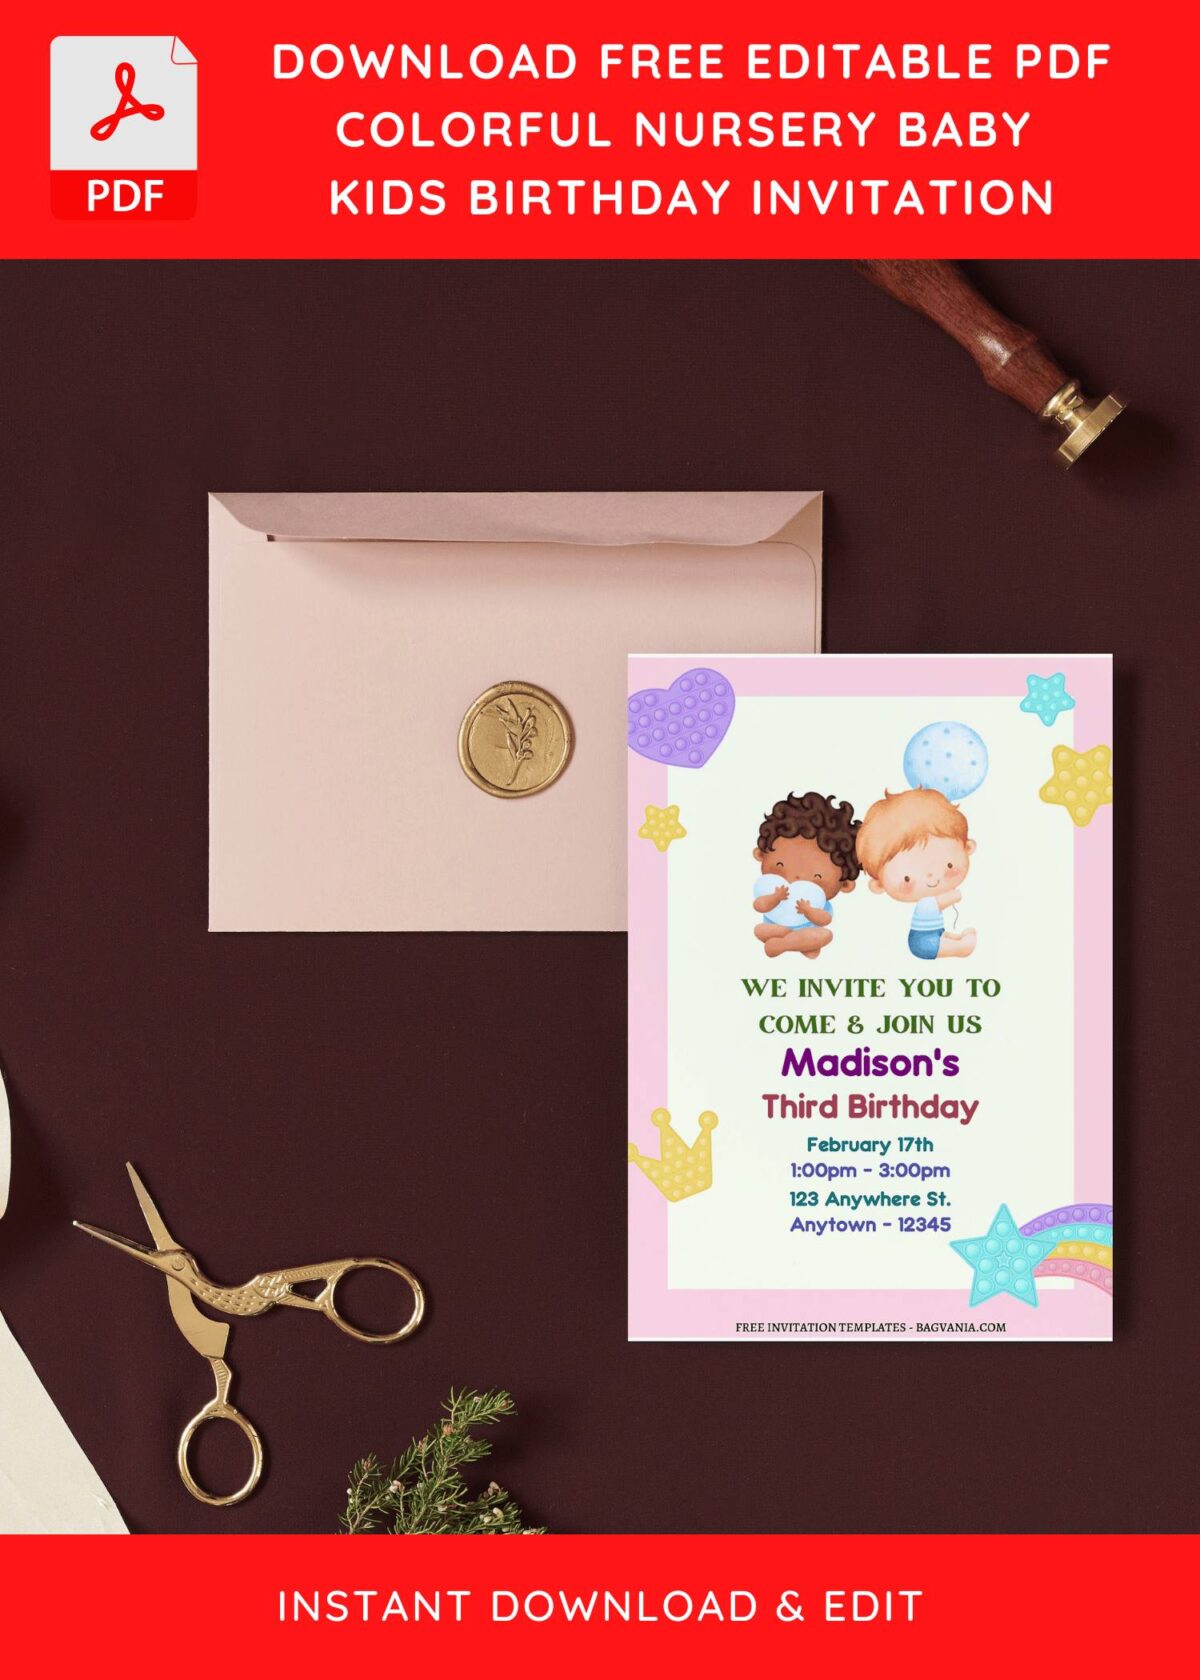 (Free Editable PDF) Colorful Rainbow Nursery Birthday Invitation Templates I